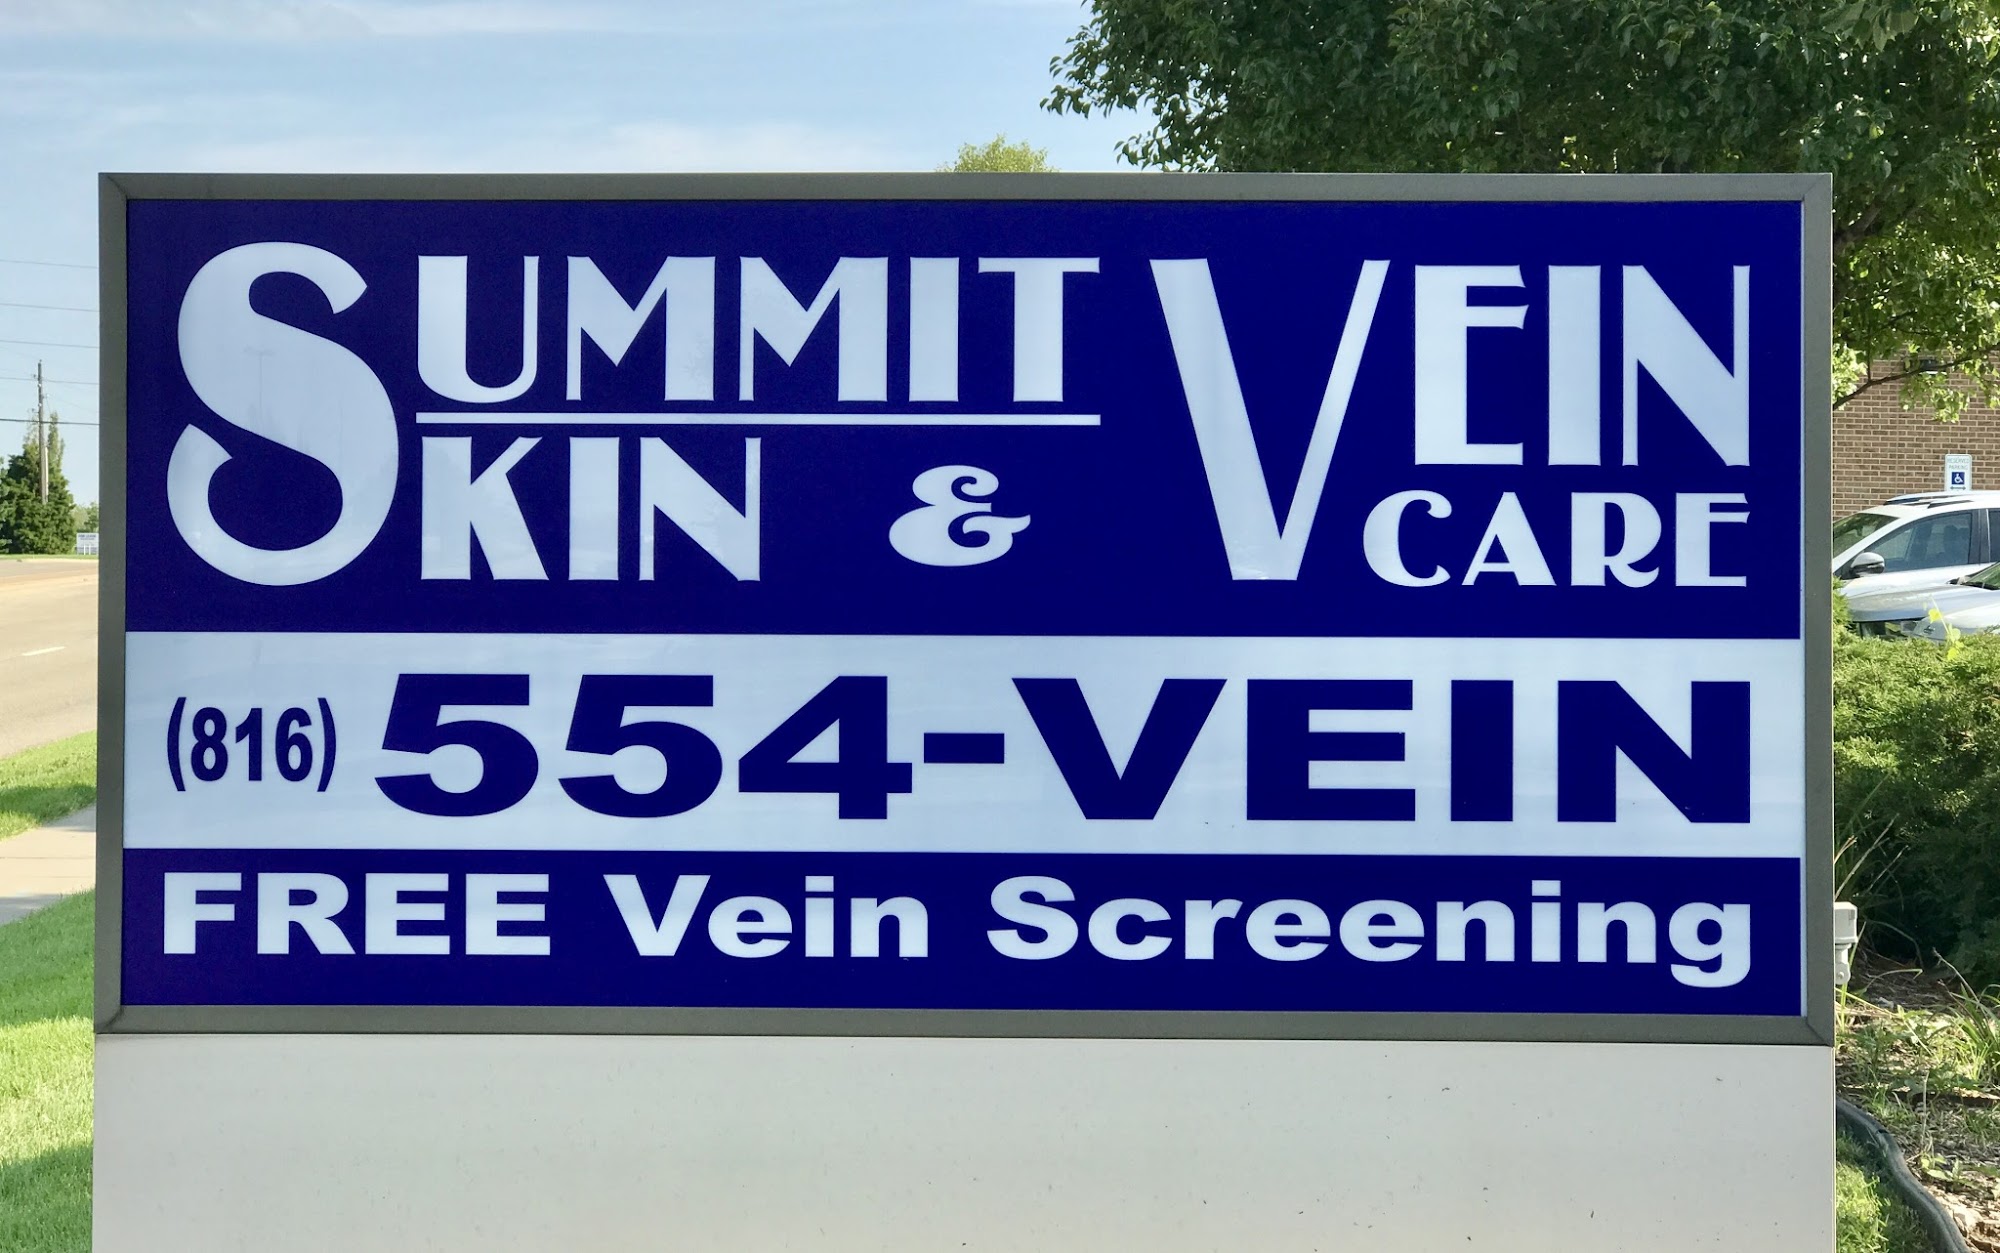 Summit Skin & Vein Care